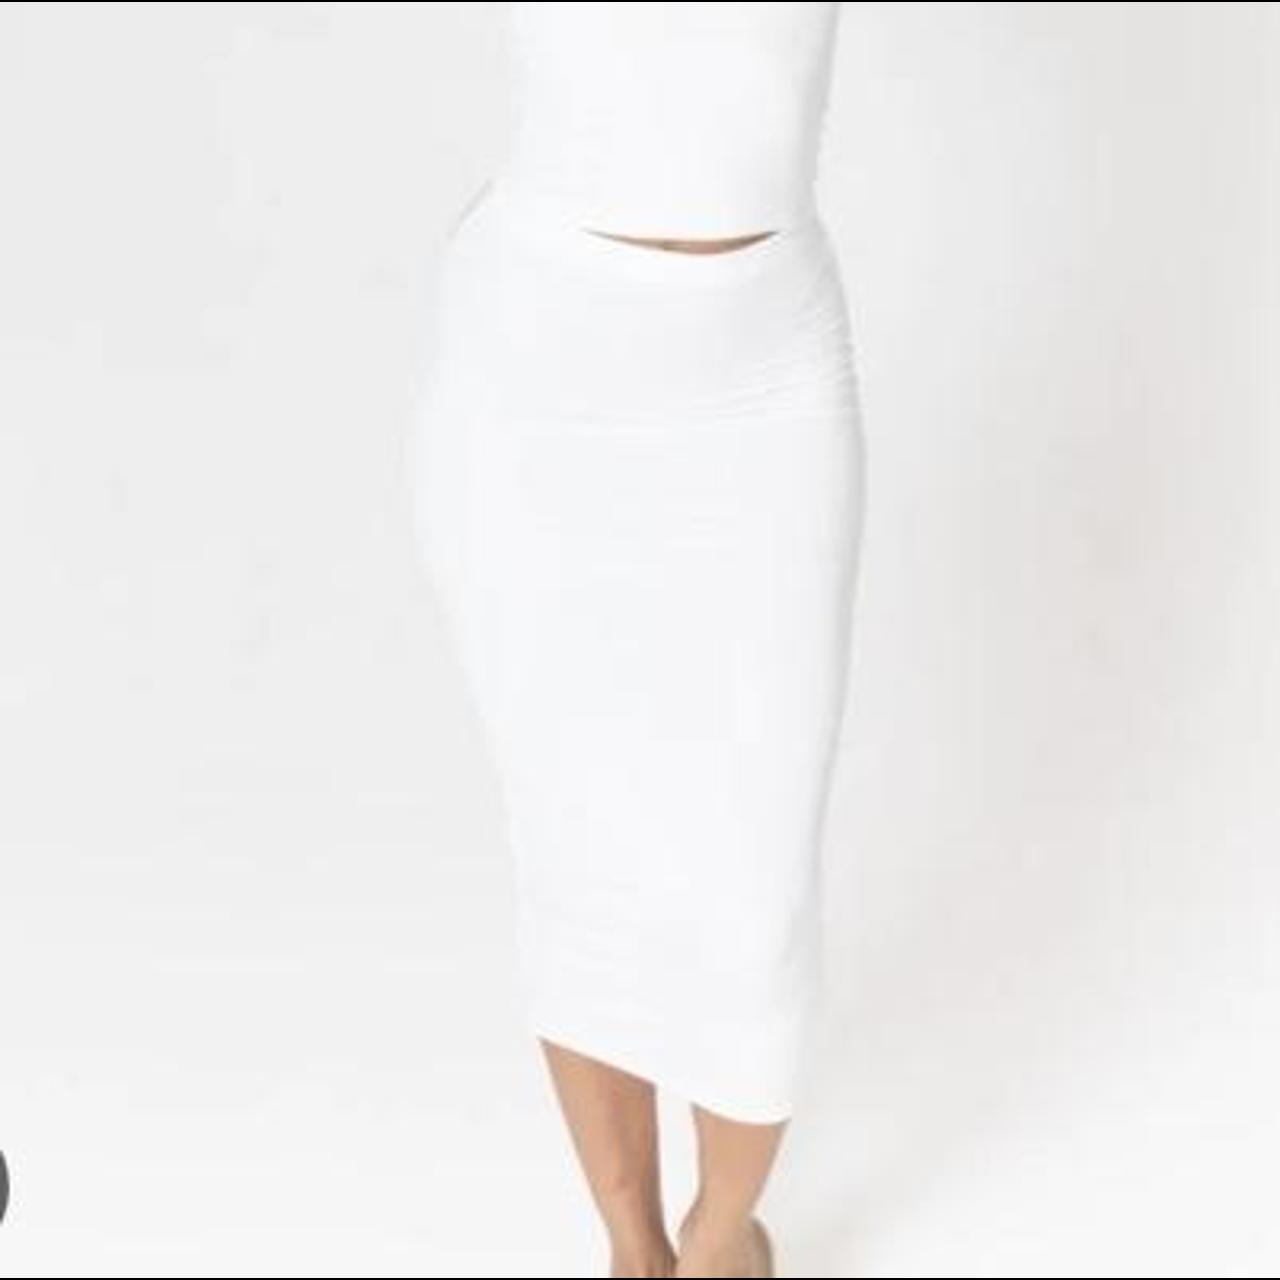 TALA 365 Bodycon Midi Skirt in Coconut Milk (White) - Depop